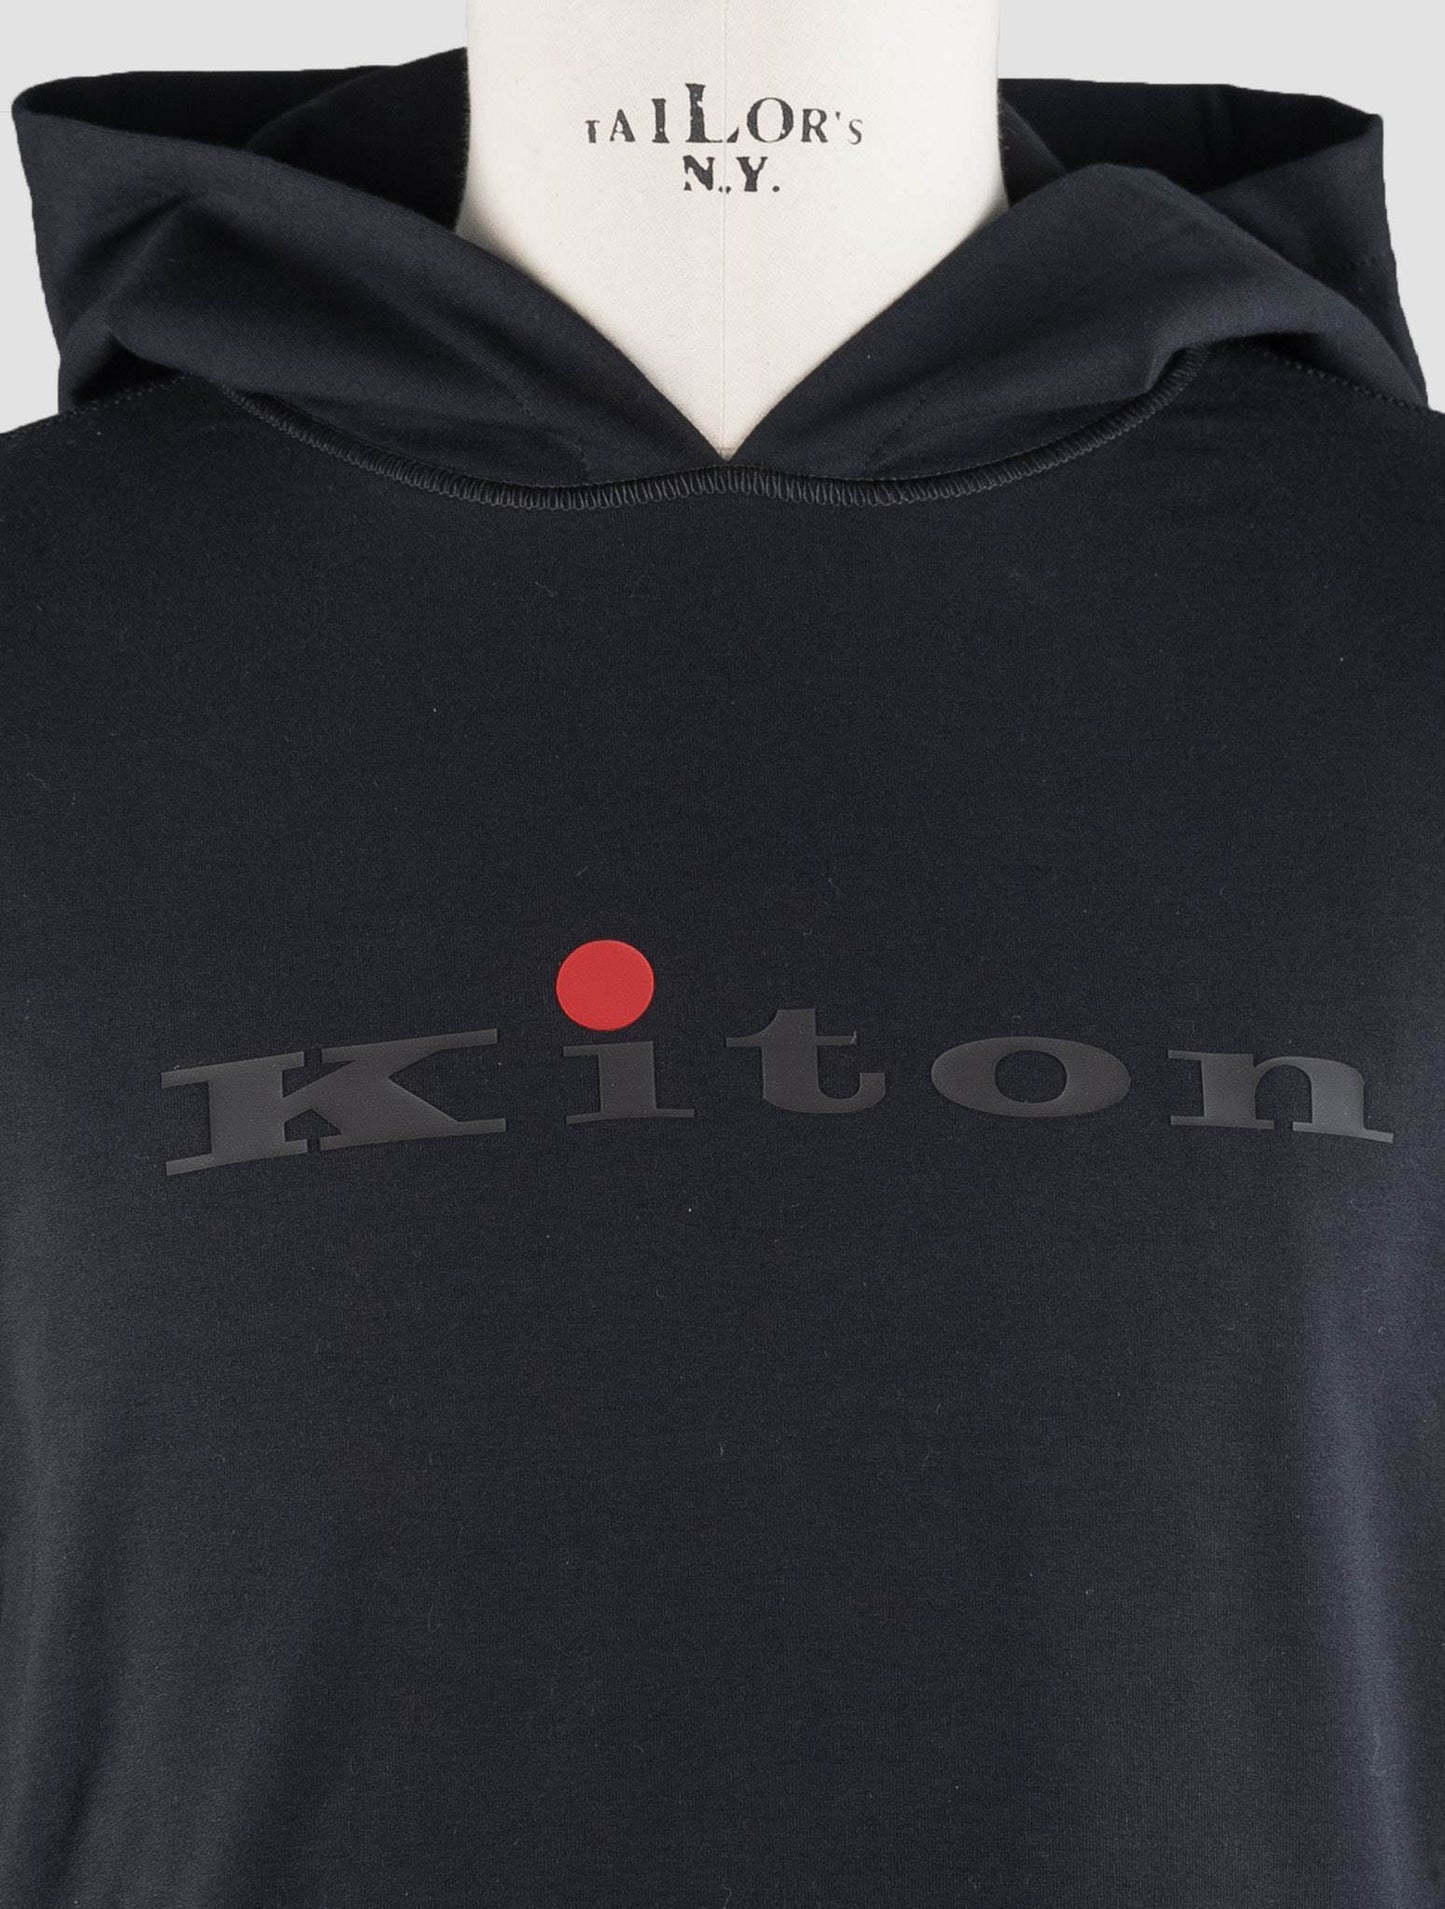 Kiton Black Cotton Ea Sweater